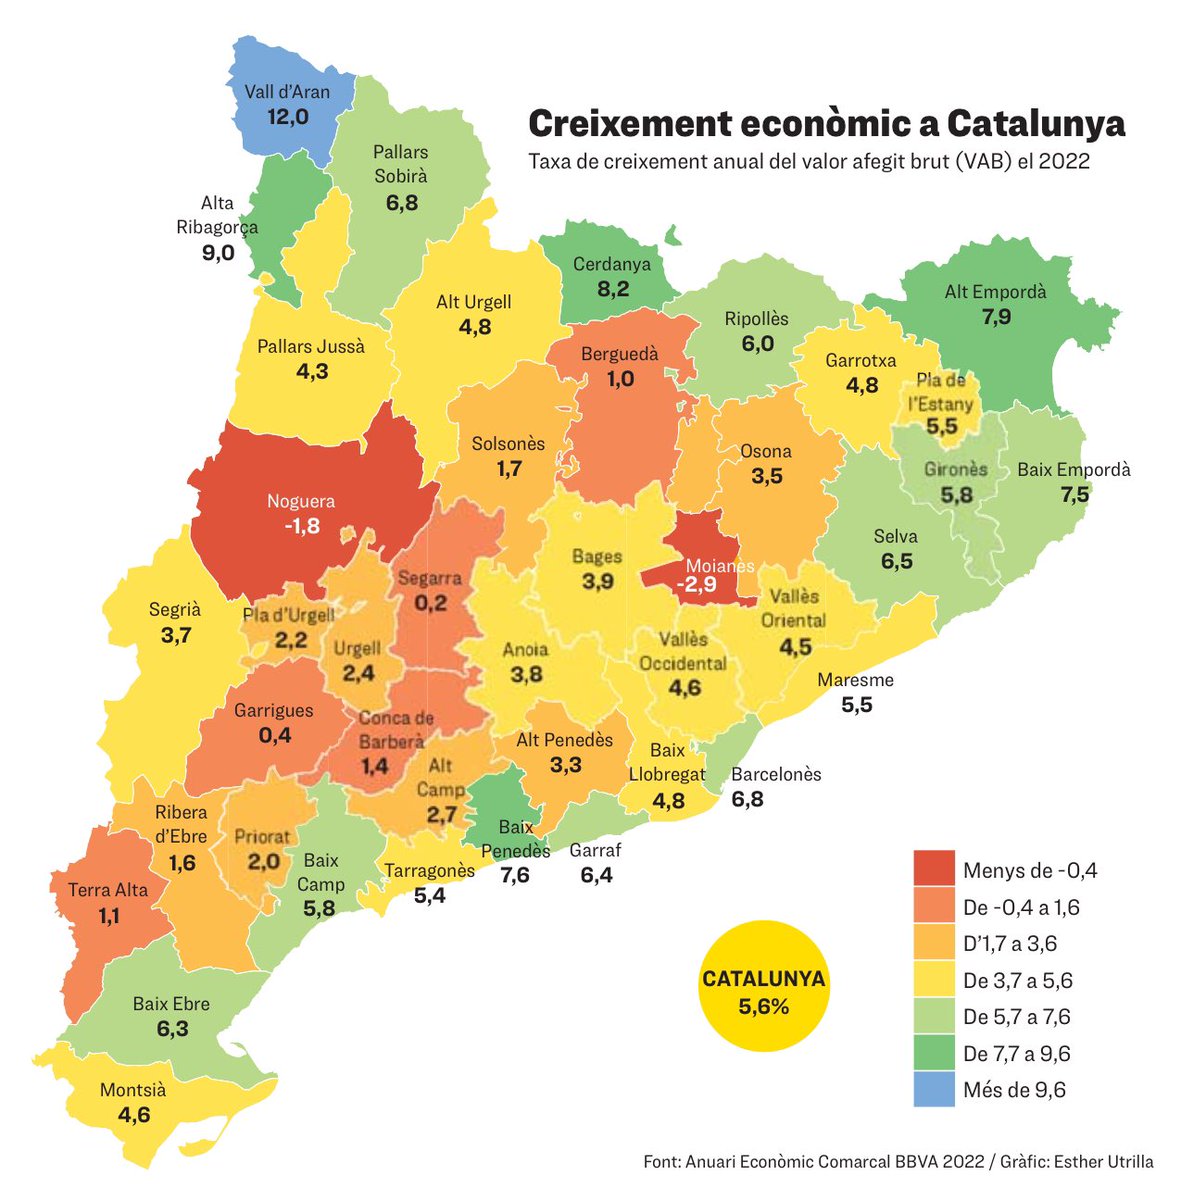 🔴 El Moianès va registrar un creixement negatiu de -2,9% l'any 2022, sent la pitjor dada comarcal de Catalunya i quan el creixement mitjà va ser del 5,6%.

És molt preocupant ser primers en creixement poblacional i darrers en creixement econòmic. Ho replantegem @comarcamoianes ?